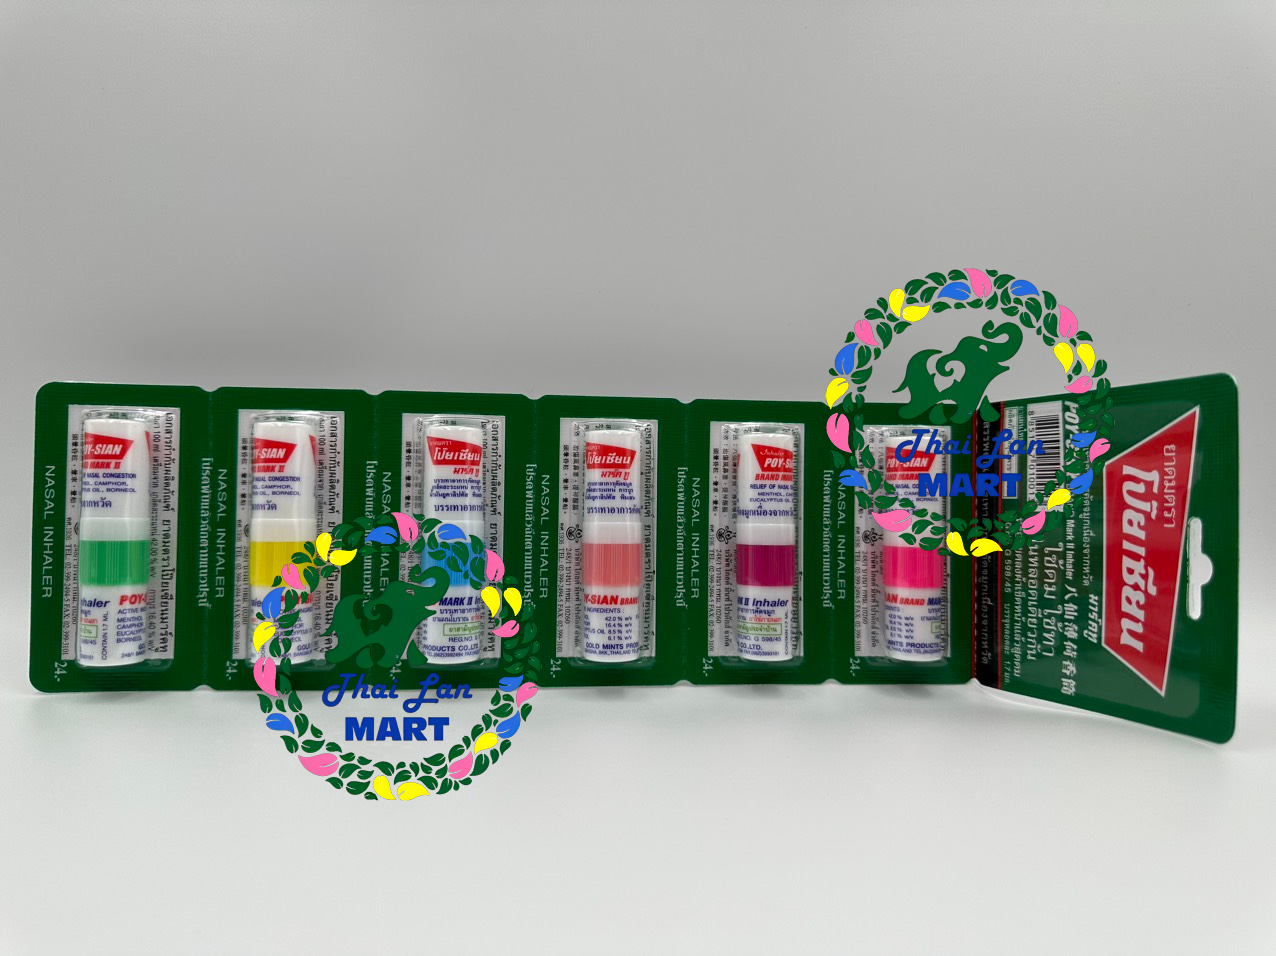  6 ống hít inhaler poy sian giúp thông mũi hàng nội địa chính hãng thái lan 